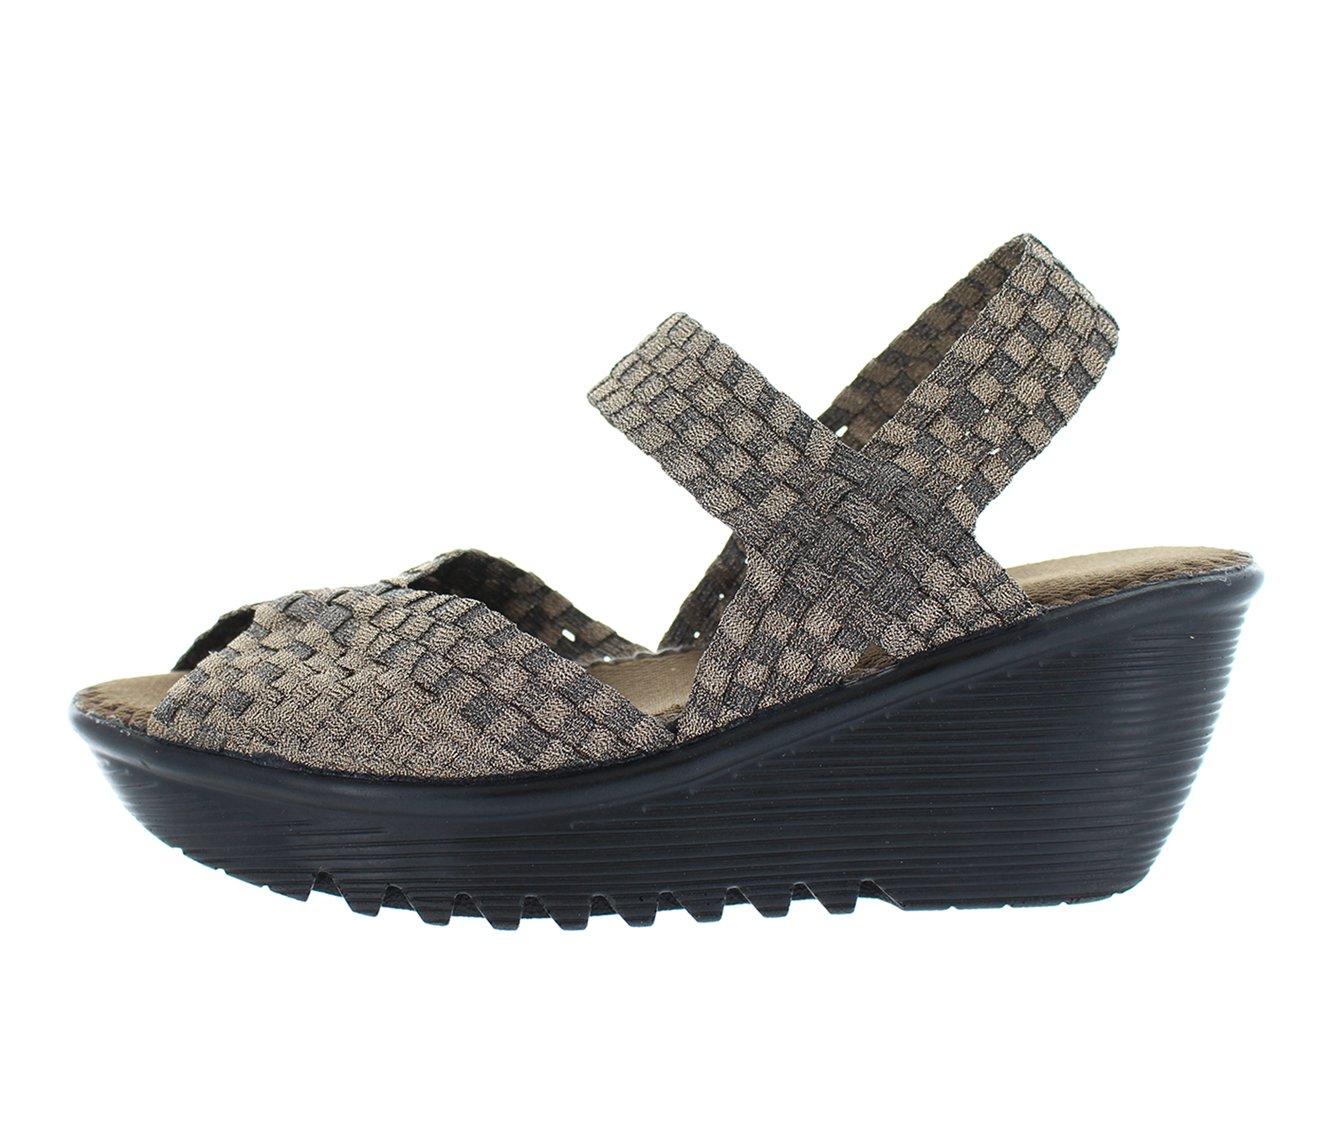 Fame Platform Sandal - Shoes